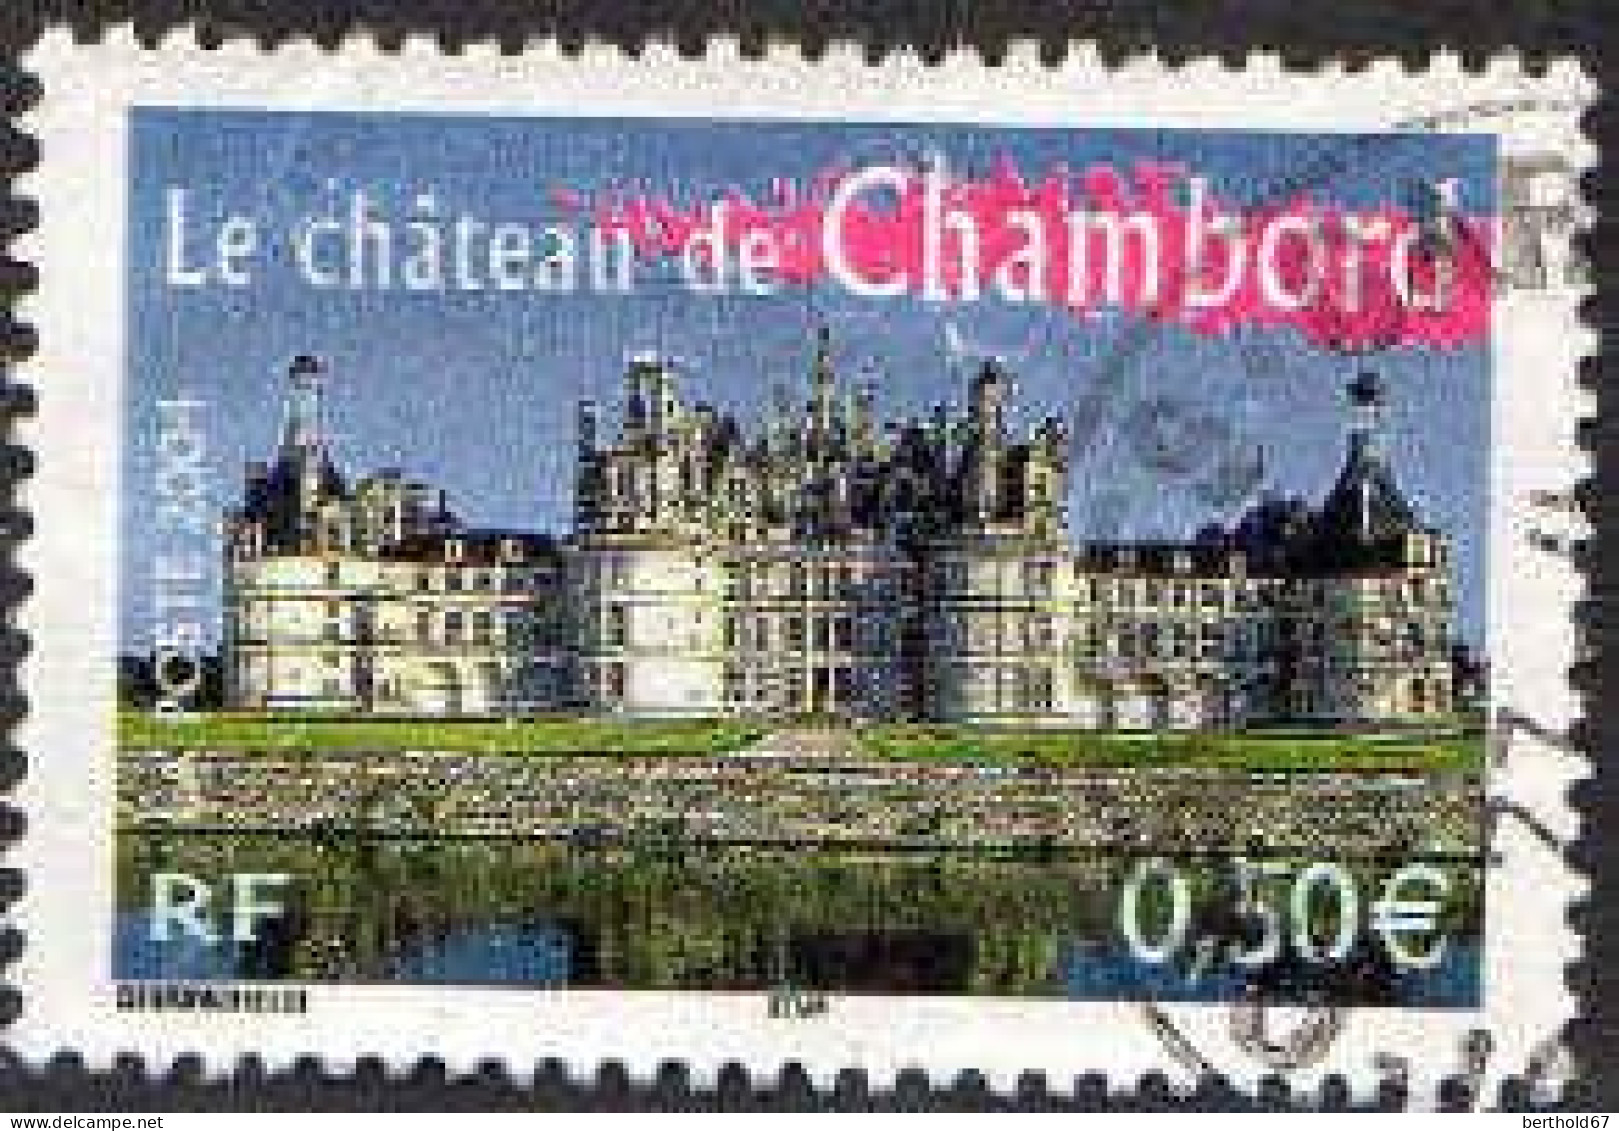 France Poste Obl Yv:3703 Le Château De Chambord (beau Cachet Rond) - Gebruikt